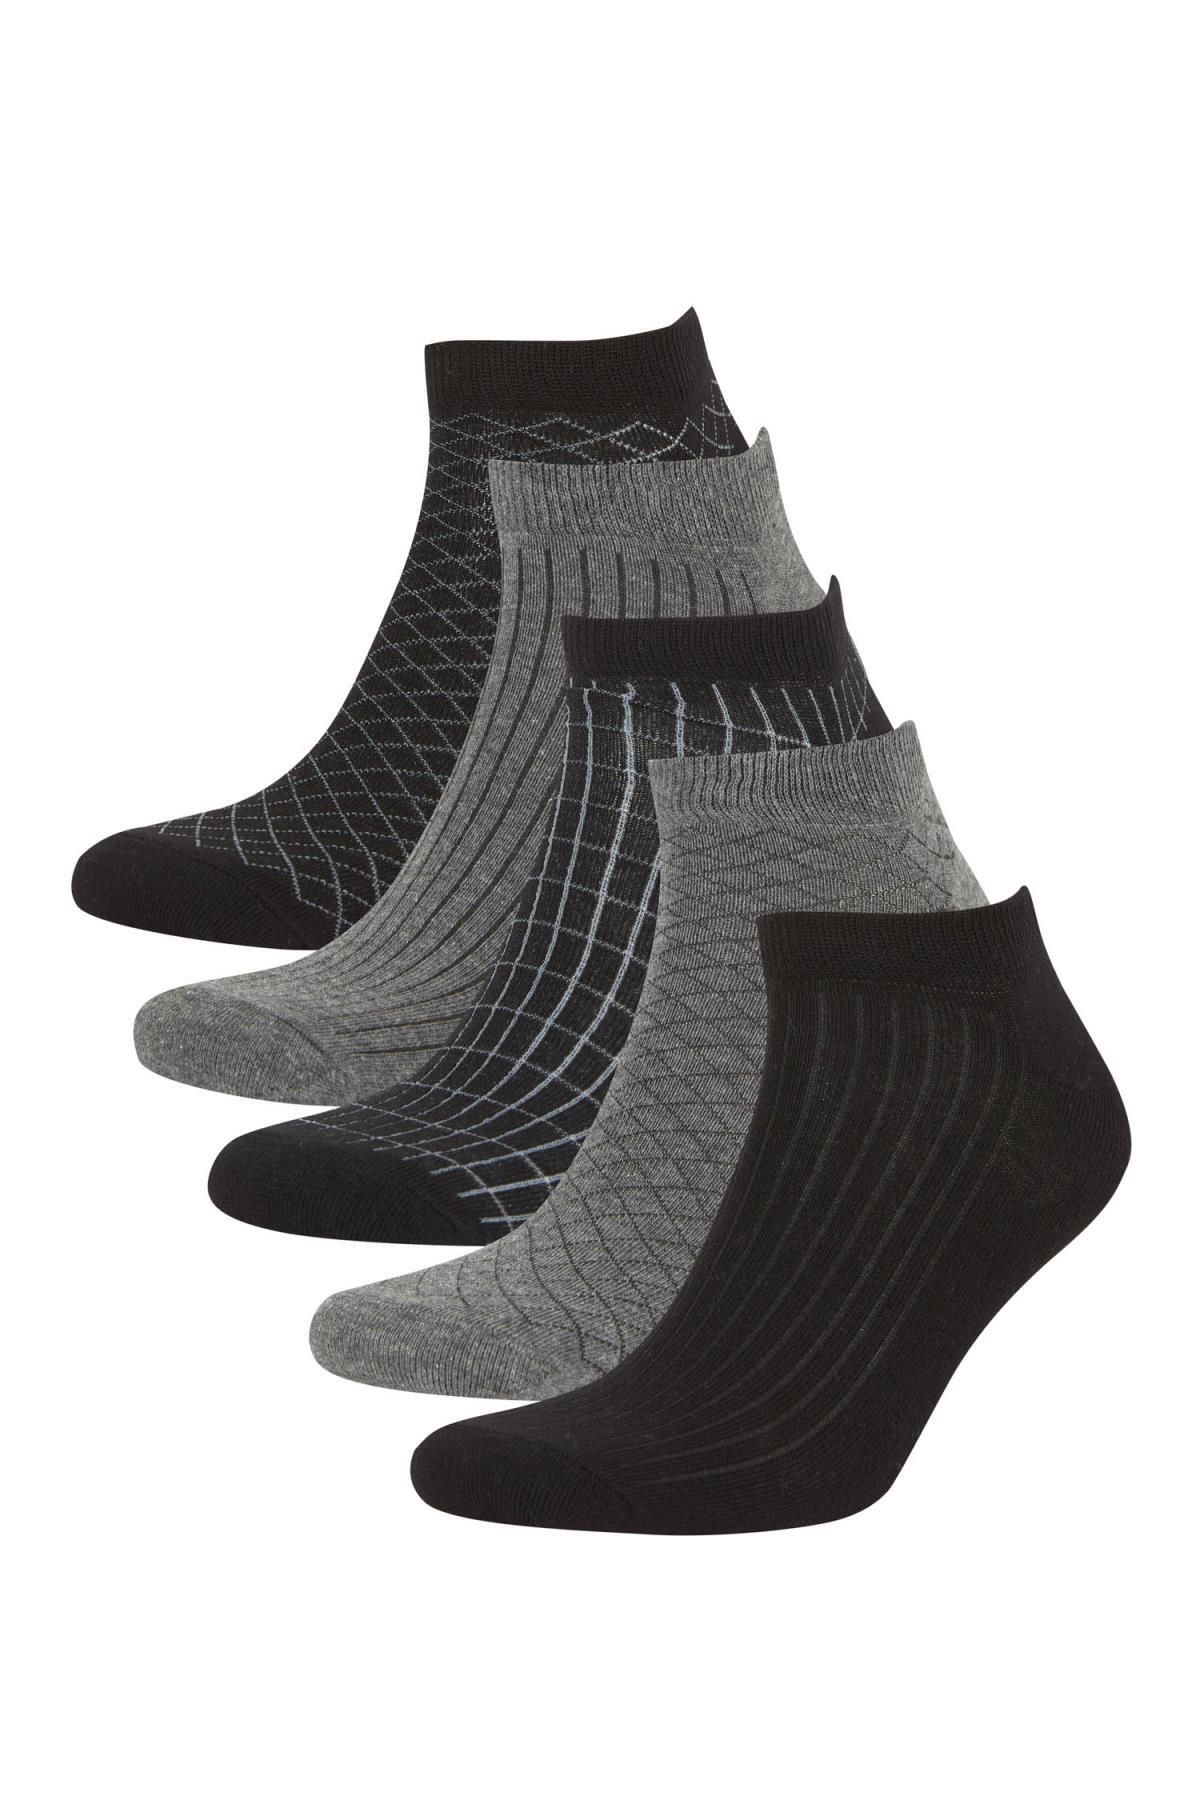 Defacto Erkek 5li Pamuklu Patik Çorap A6125axns